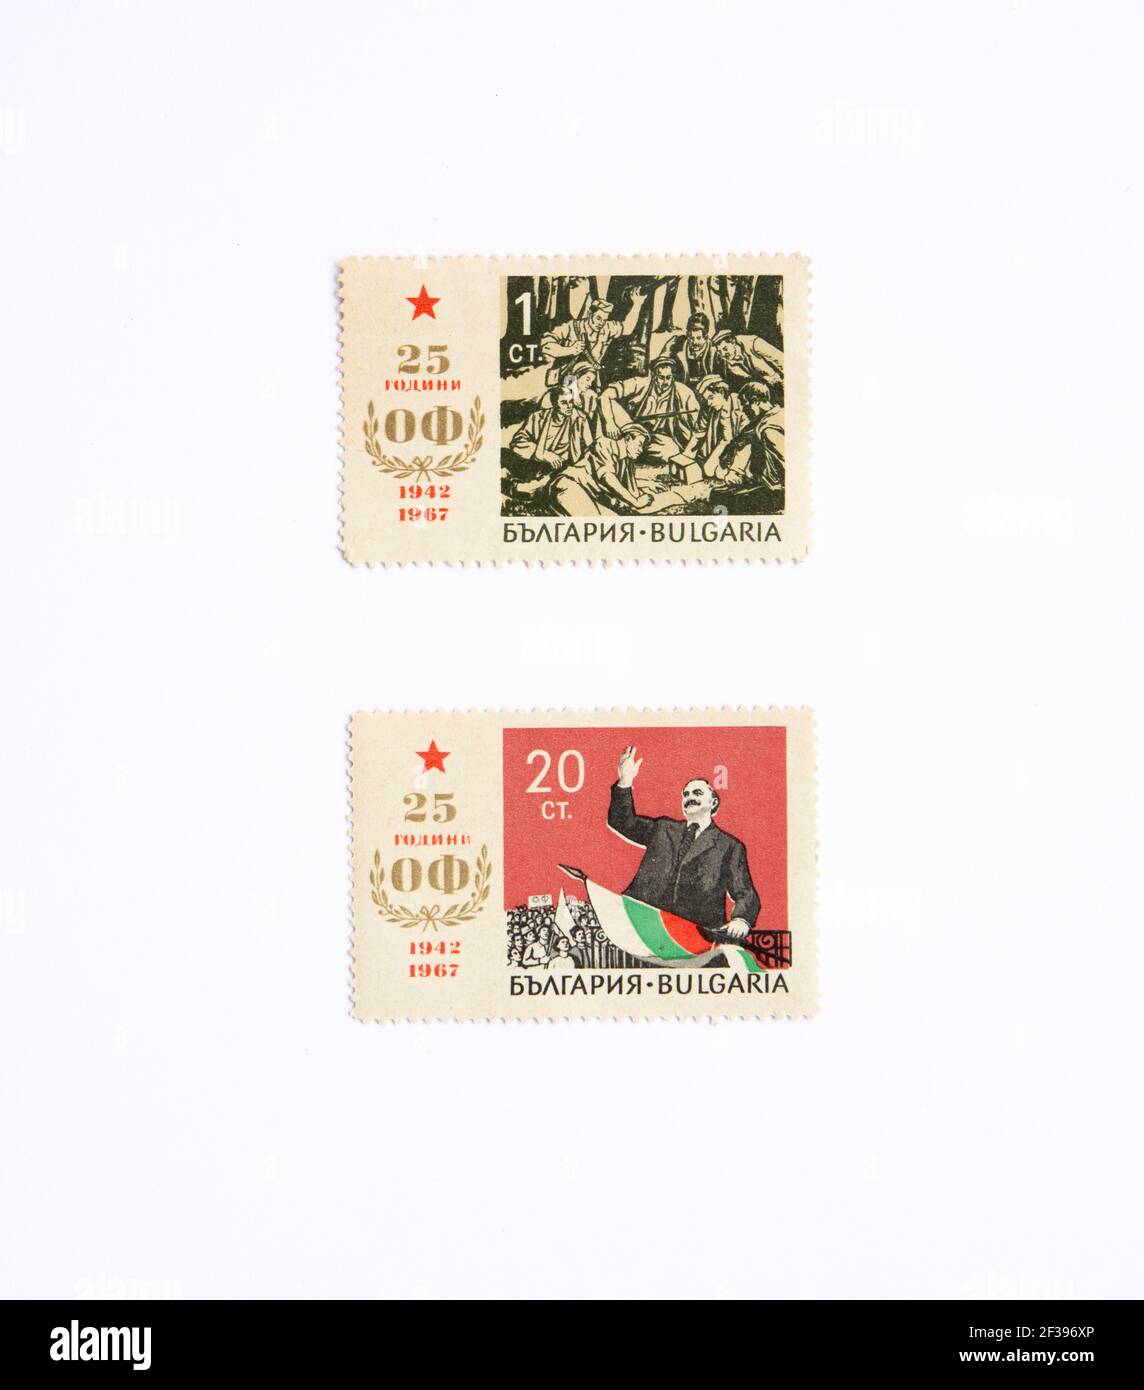 05.03.2021 Istanbul Türkei - gebrauchte und abgesagte Briefmarke. Eine in Bulgarien gedruckte Briefmarke Stockfoto